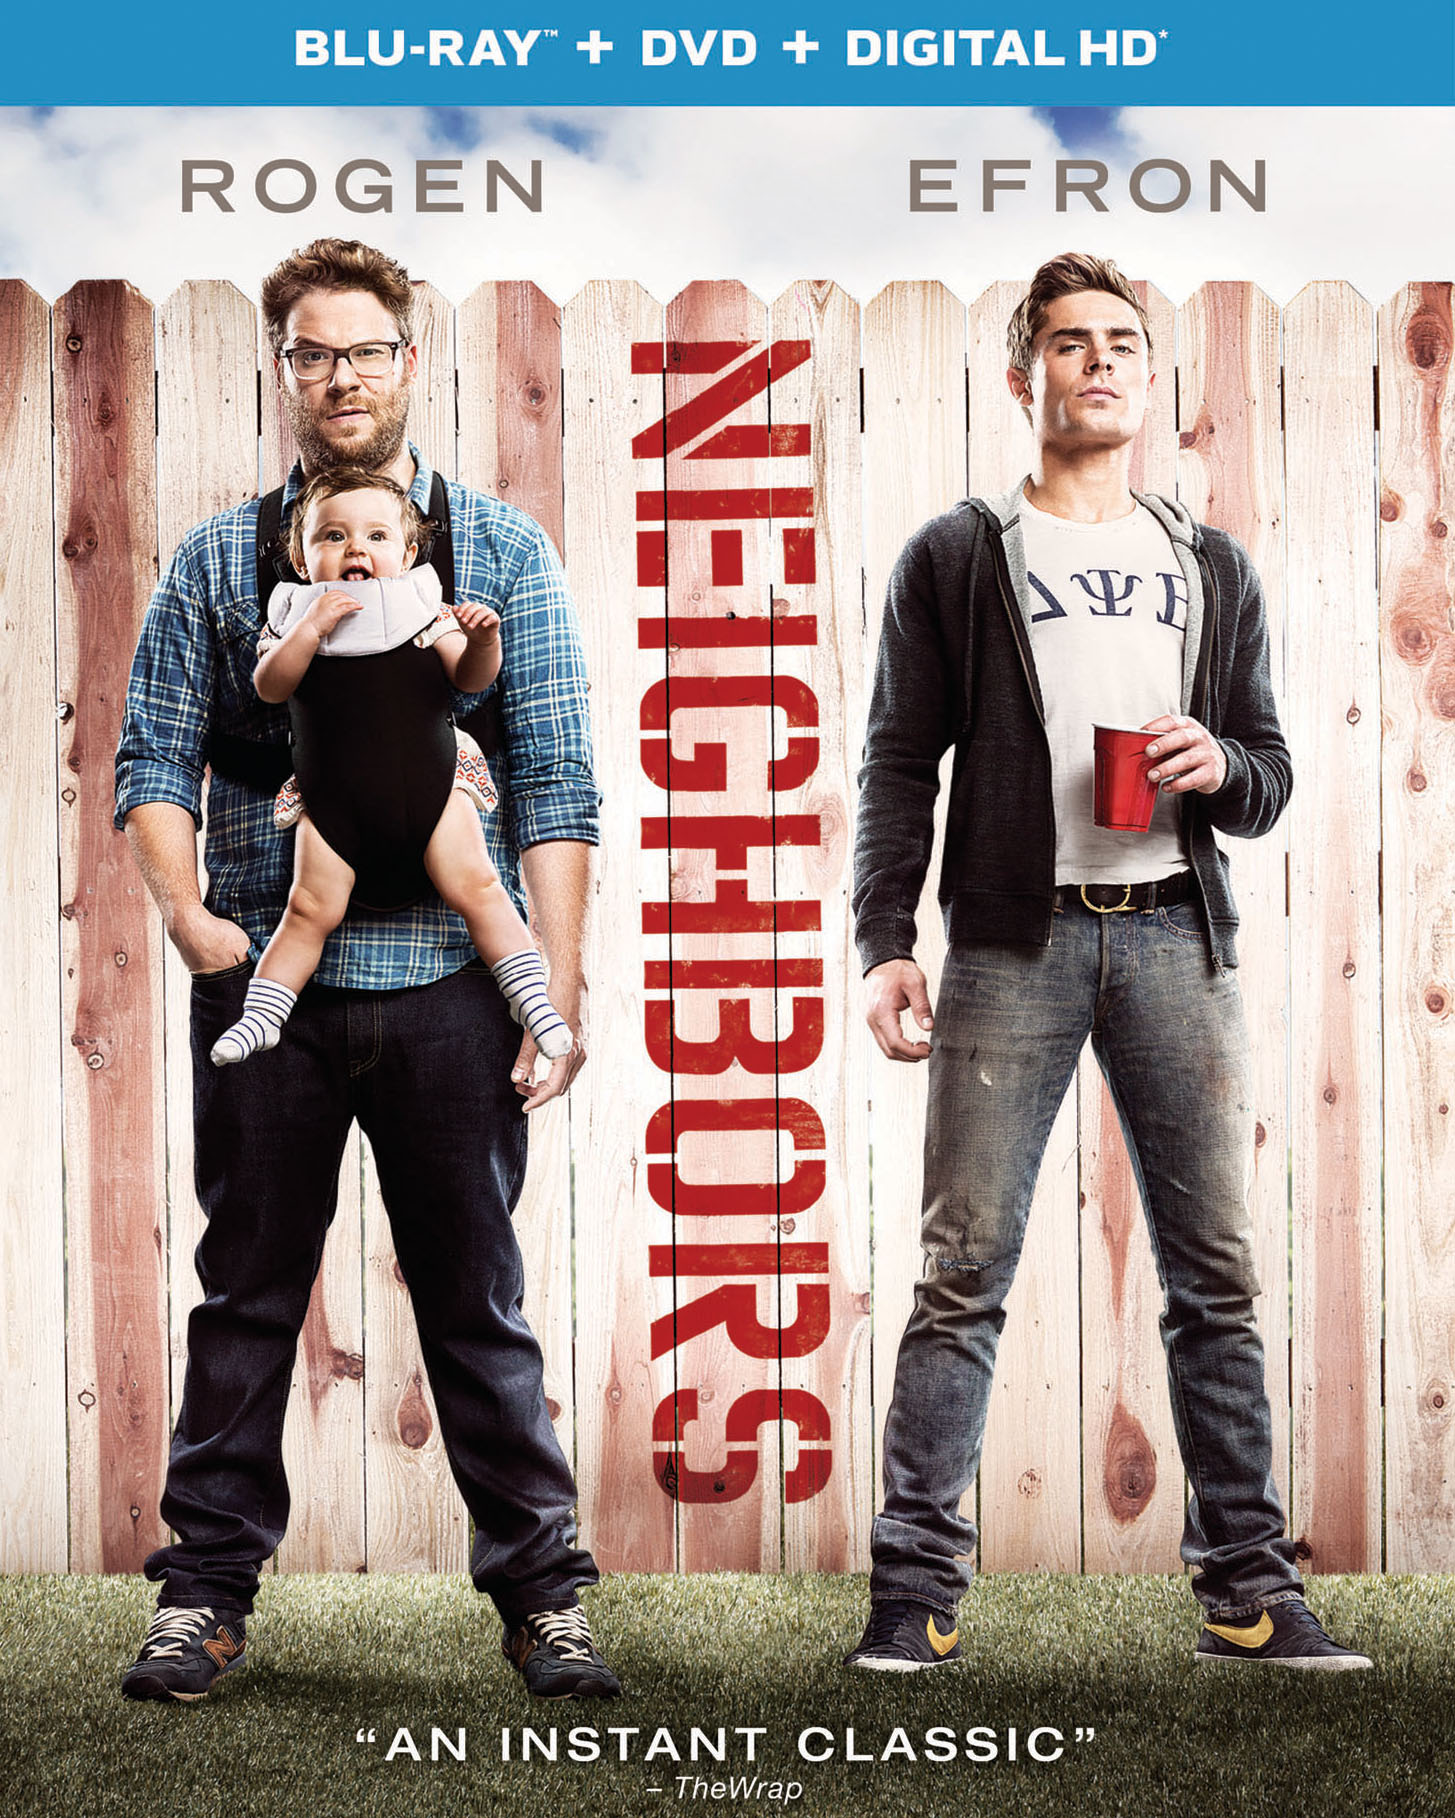 Movie Review: Neighbors (2014)